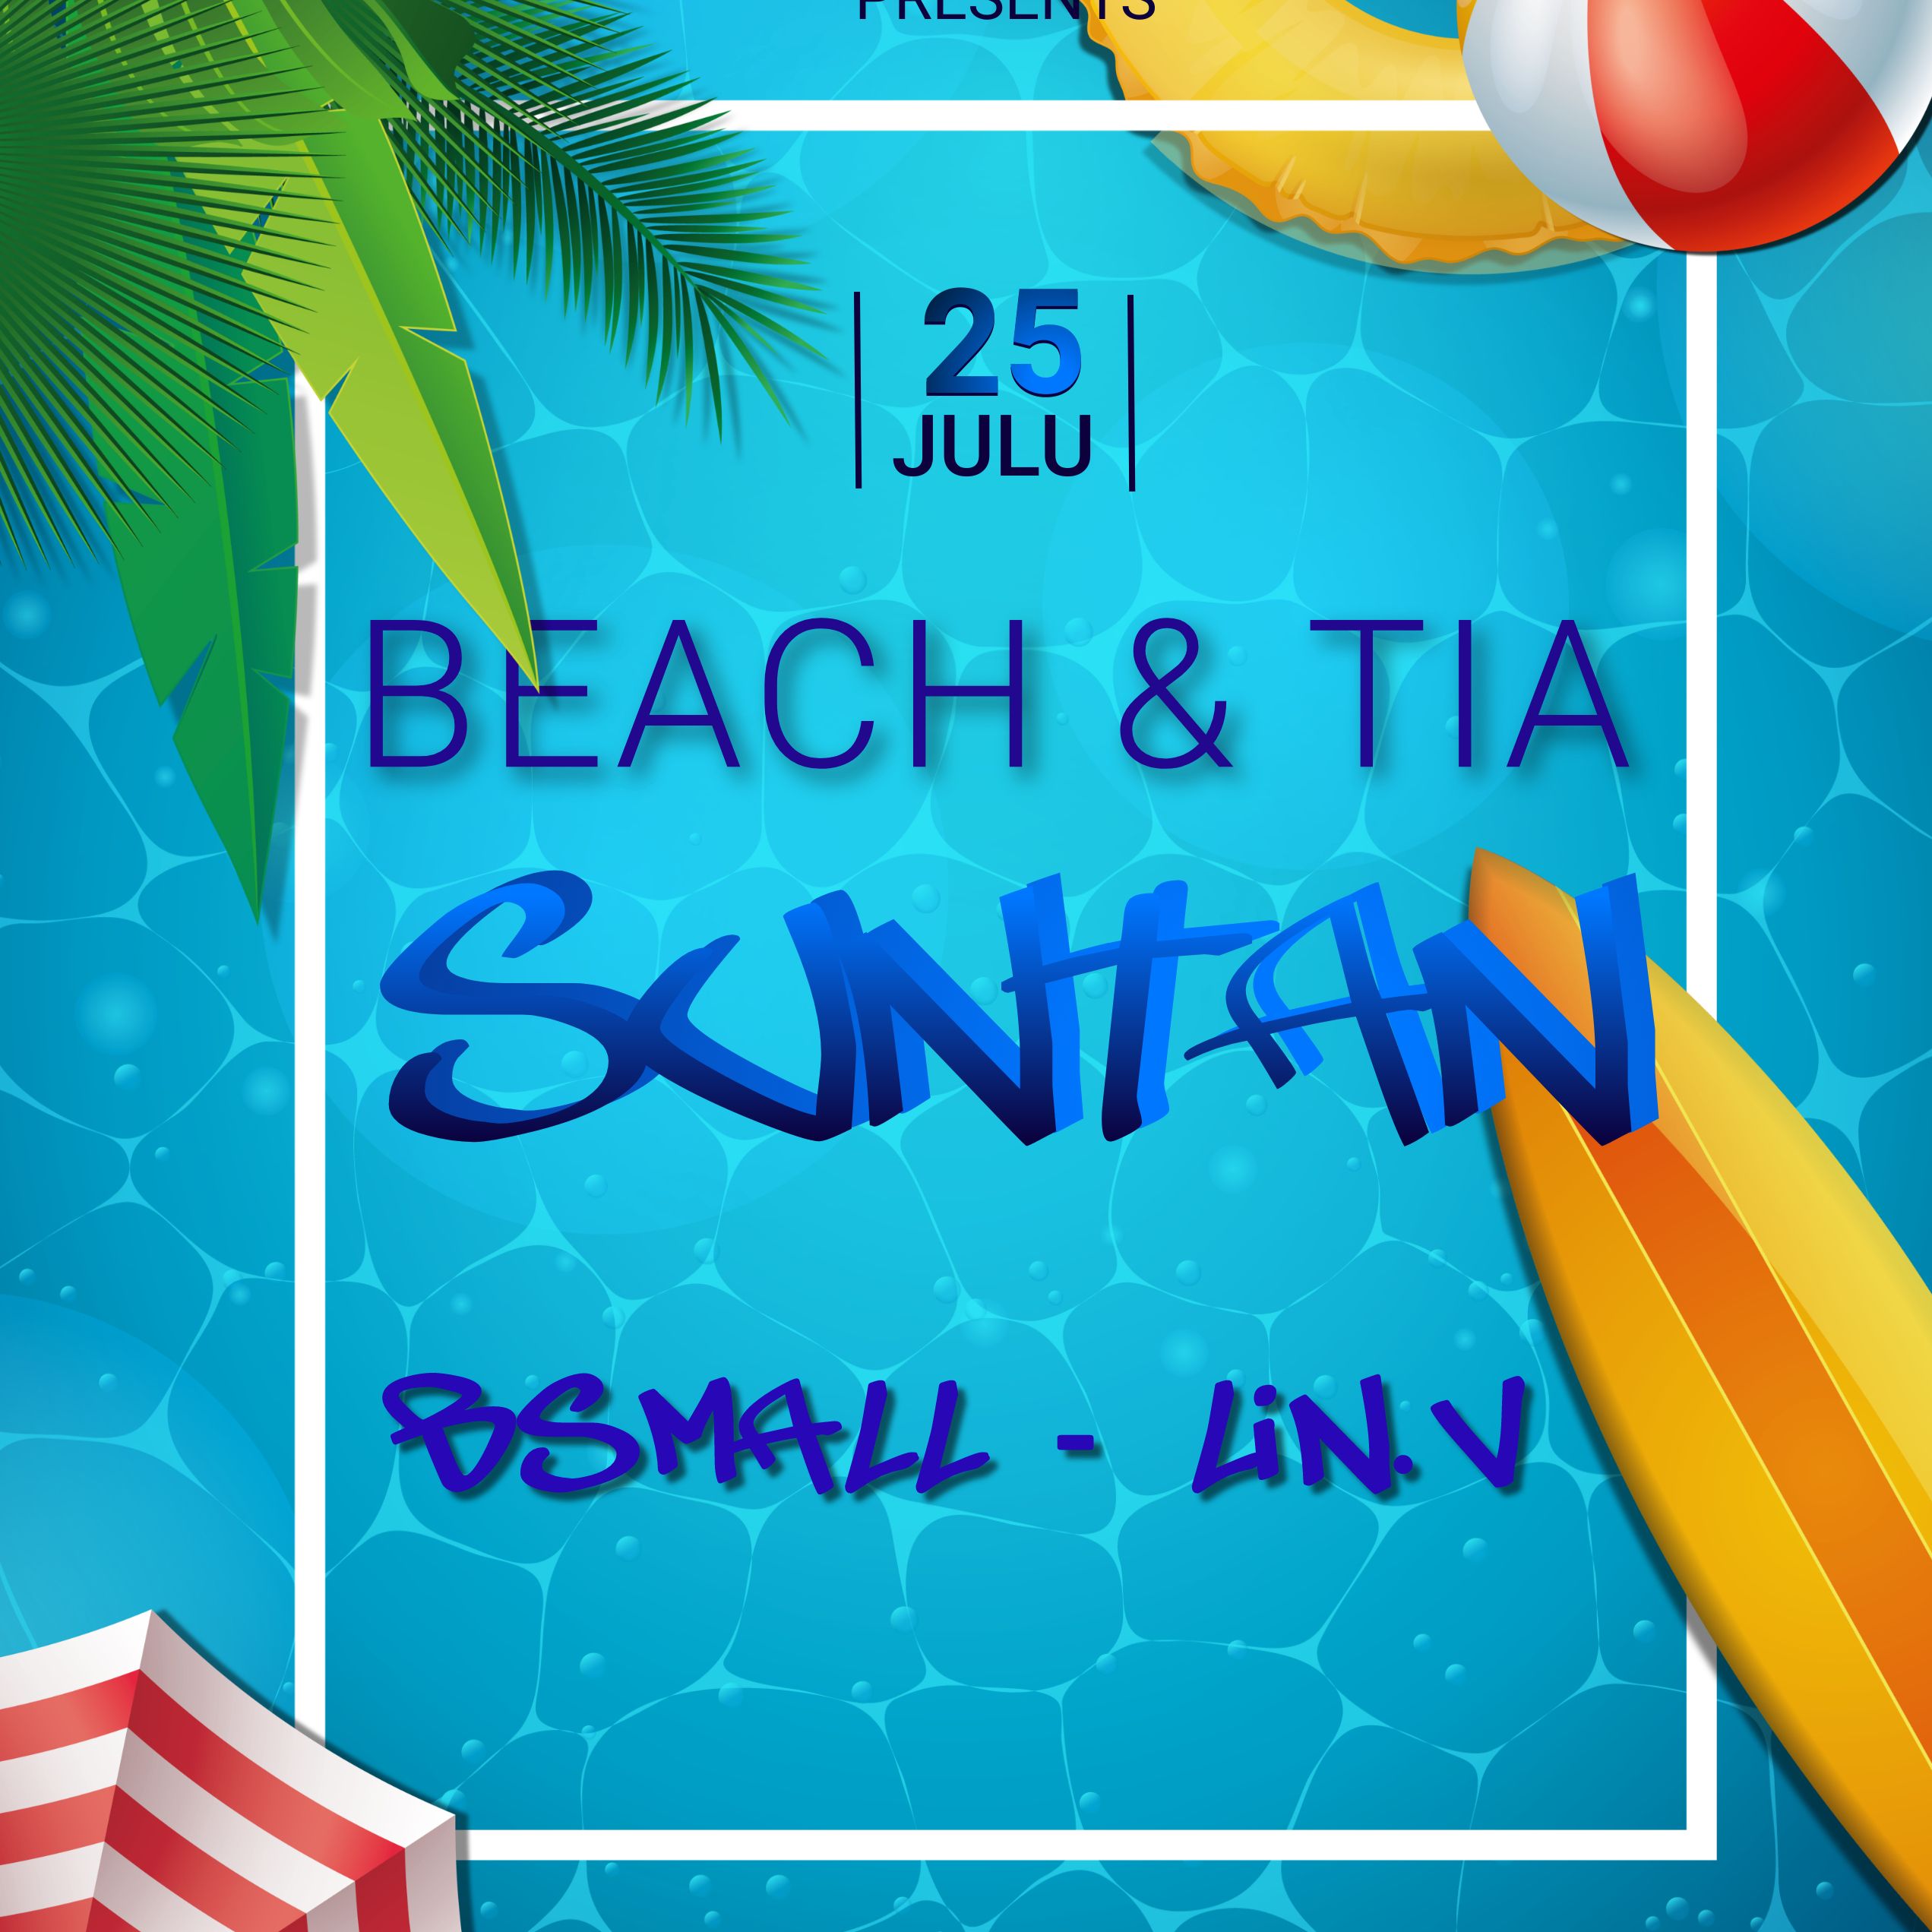 Budata Beach.TIA - SUNTAN 2022  - BSmall X LIN.V -  REmix FULL